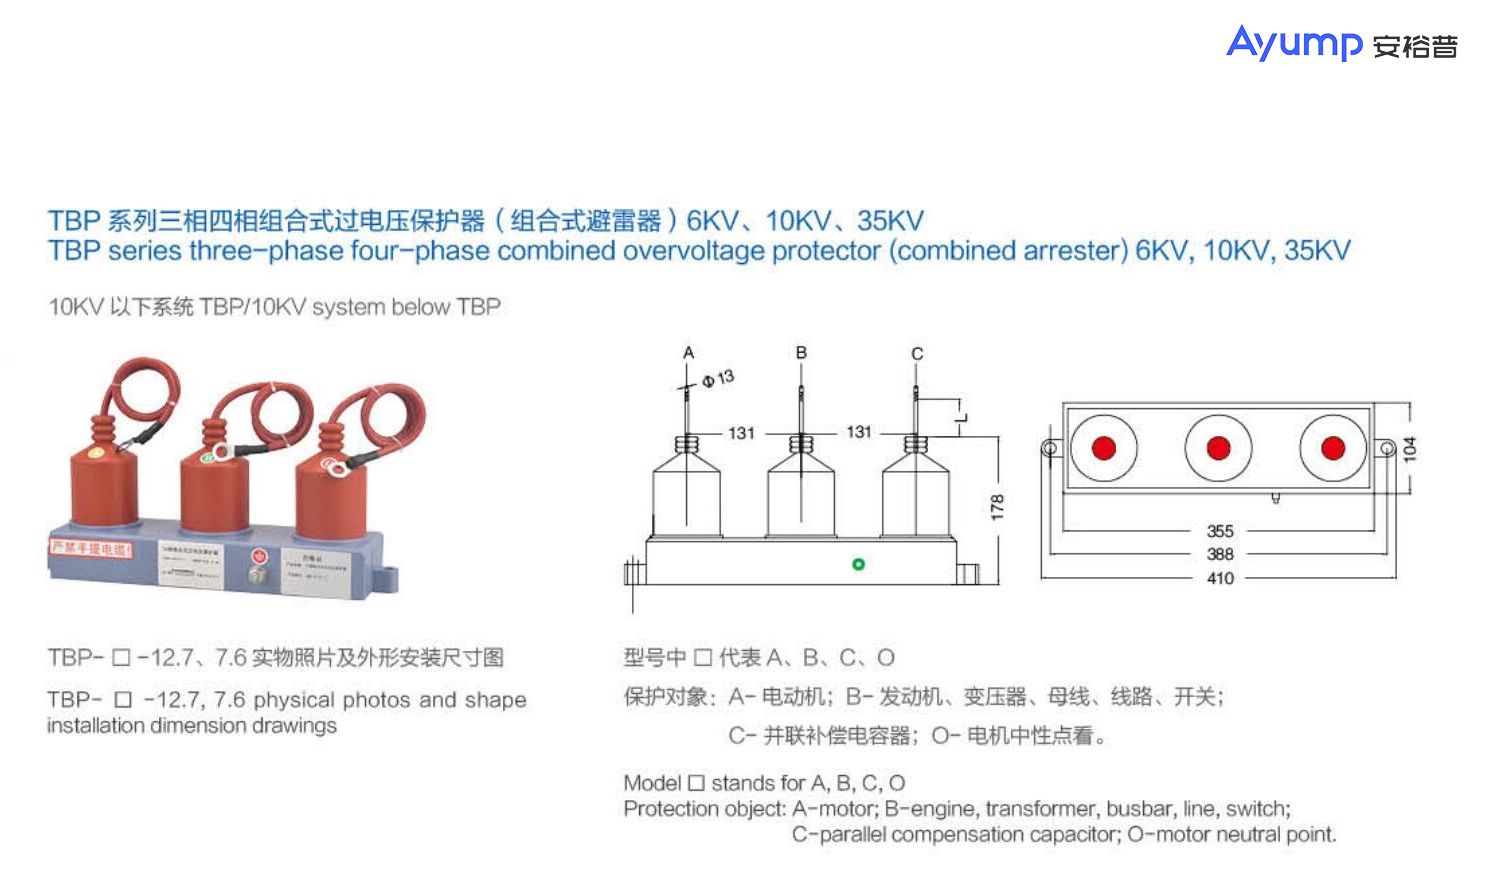 TBP系列三相四相组合式过电压保护器( 组合式避雷器) 6KV、10KV、 35KV